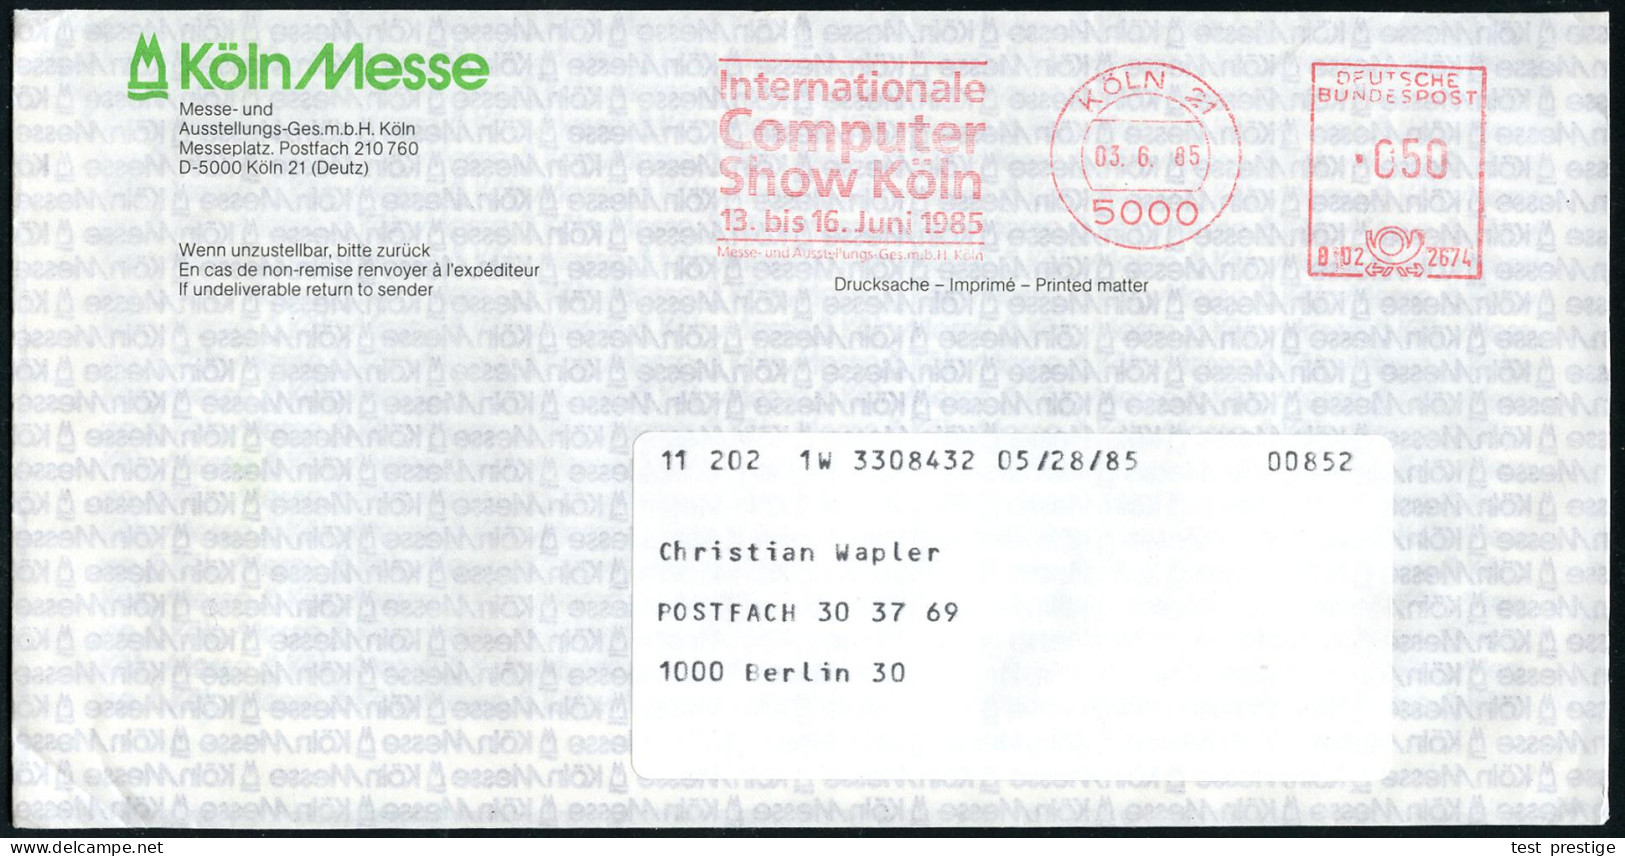 5000 KÖLN 21/ Internationale/ Computer/ Show../ 13.bis 16.Juni 1985 (3.6.) Seltener AFS Der Messe-GmbH Mit Kennung Auf Z - Informatik